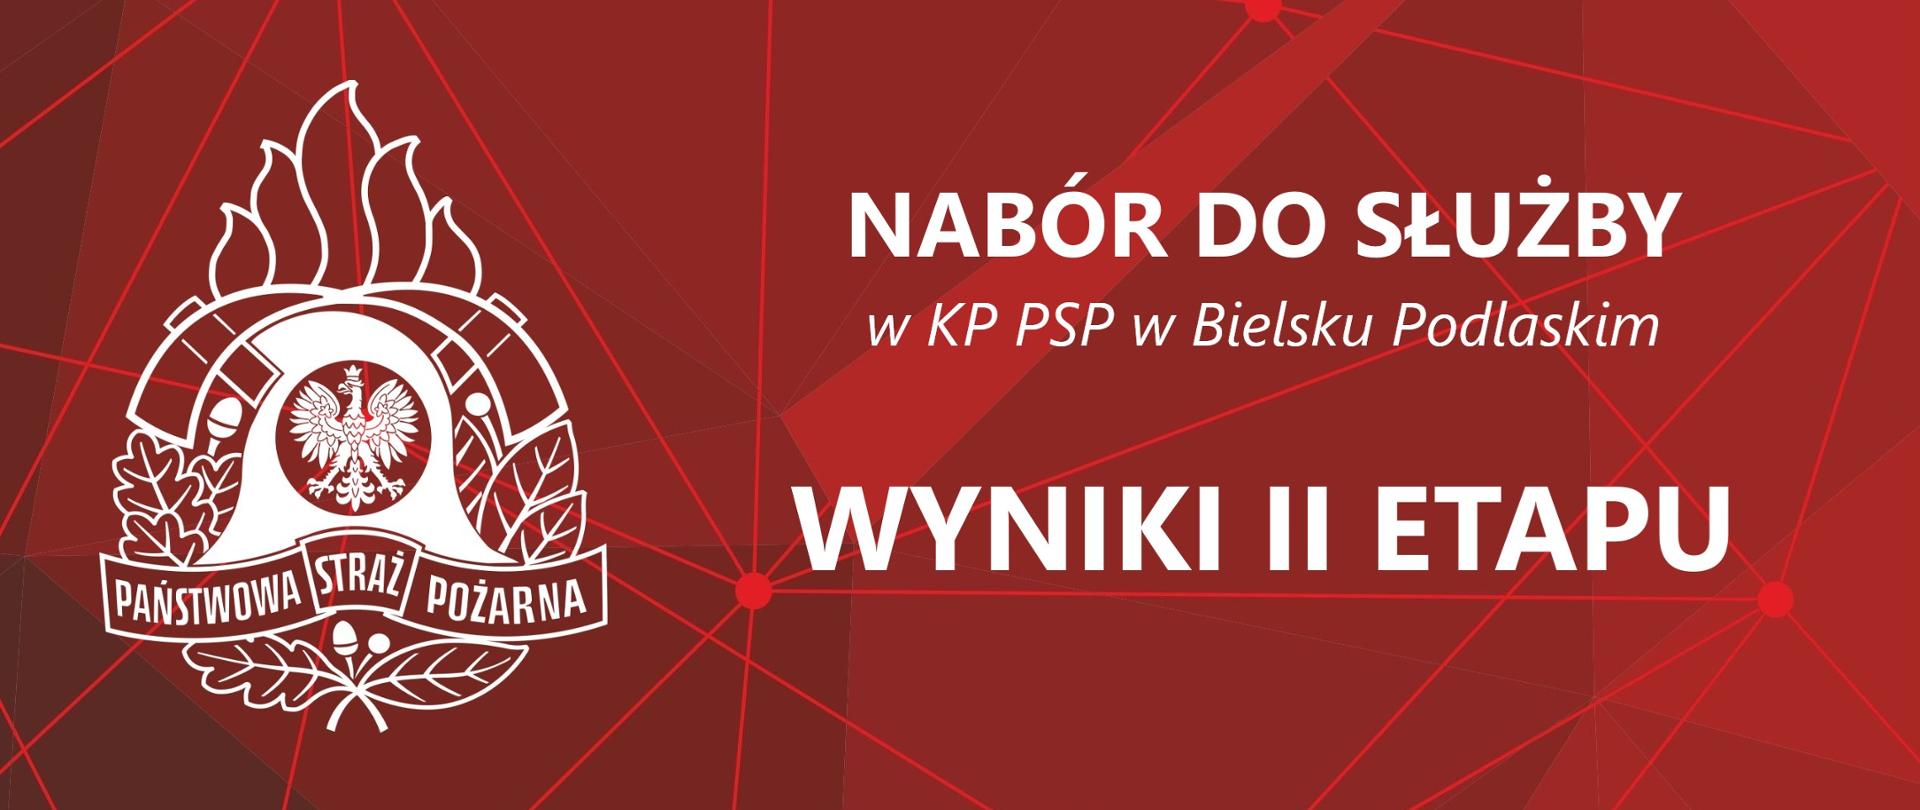 Baner z logo PSP i Napisem: Nabór do służby w KP PSP w Bielsku Podlaskim - Wyniki II etapu